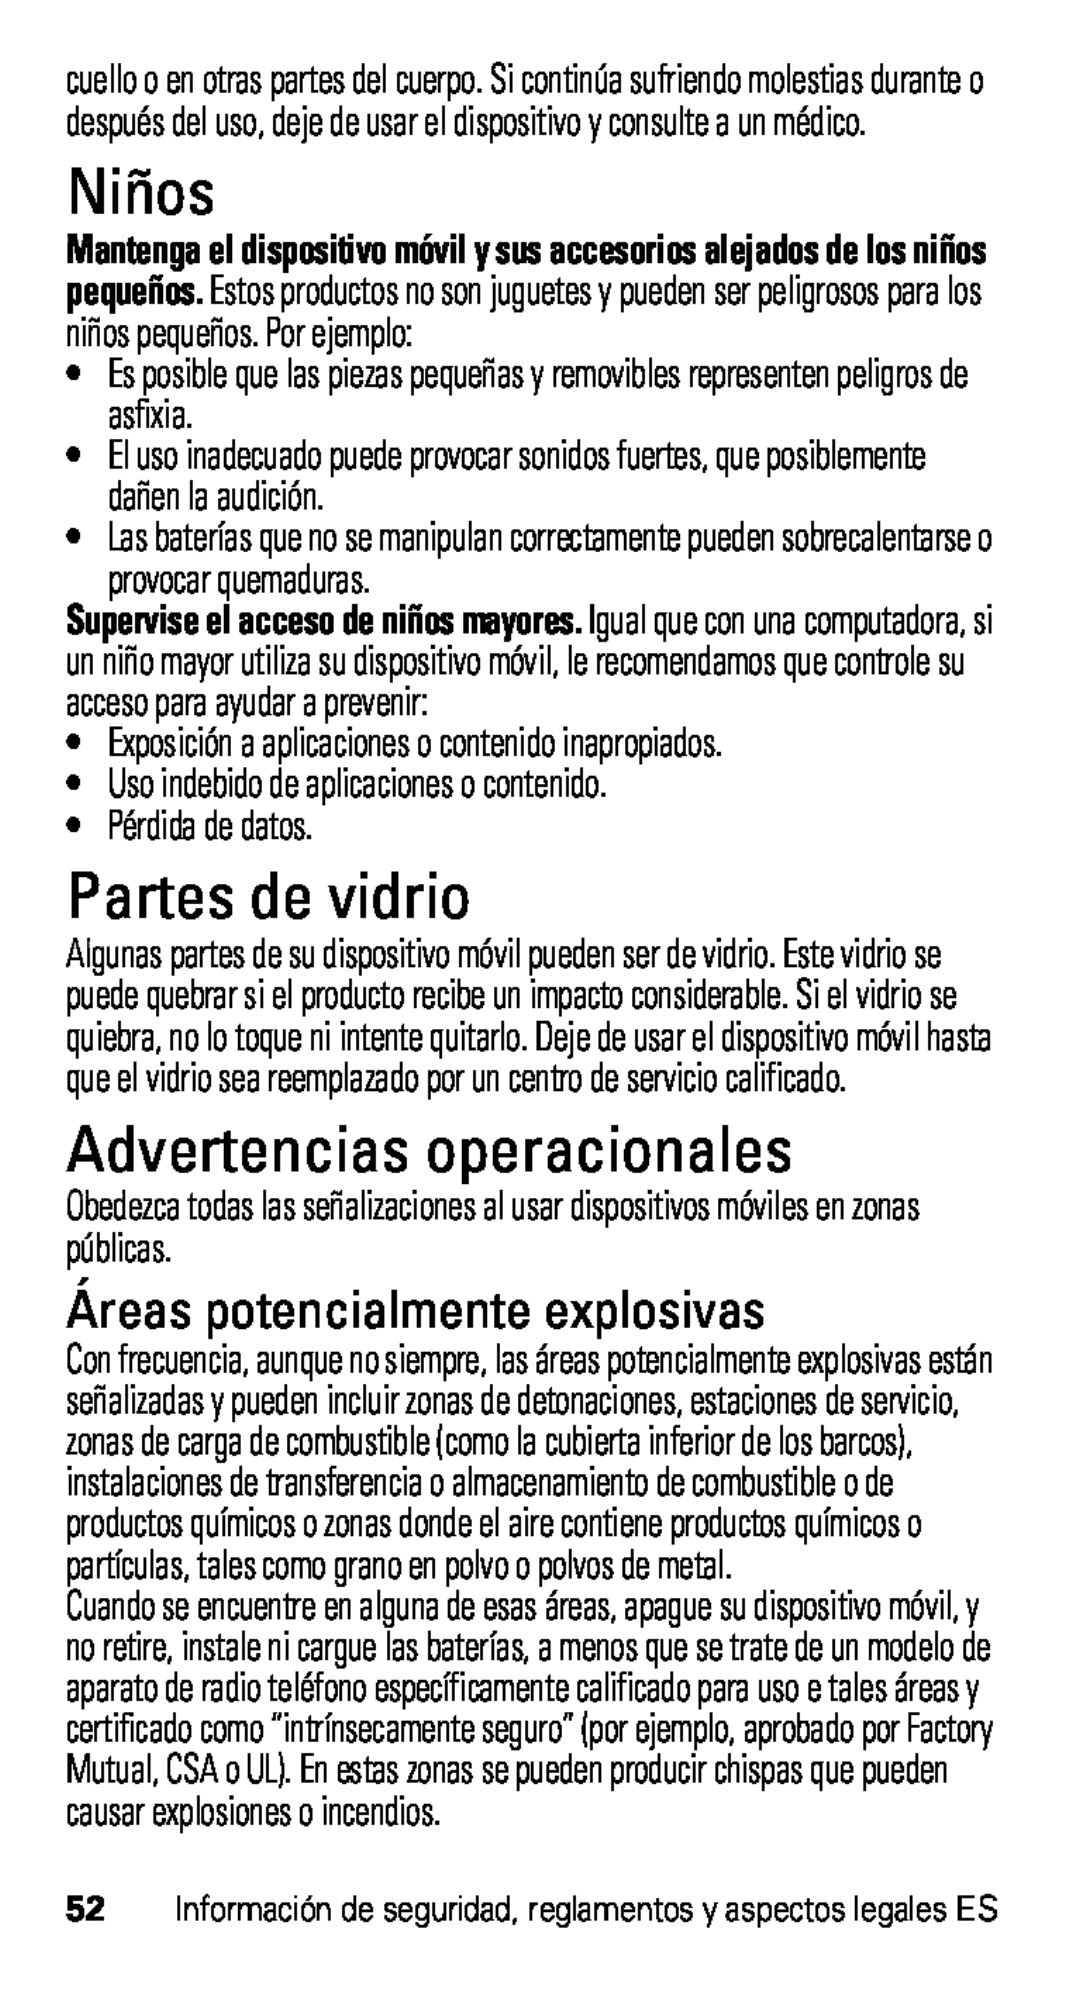 Motorola XT915, D1 manual Niños, Partes de vidrio, Advertencias operacionales, Áreas potencialmente explosivas 